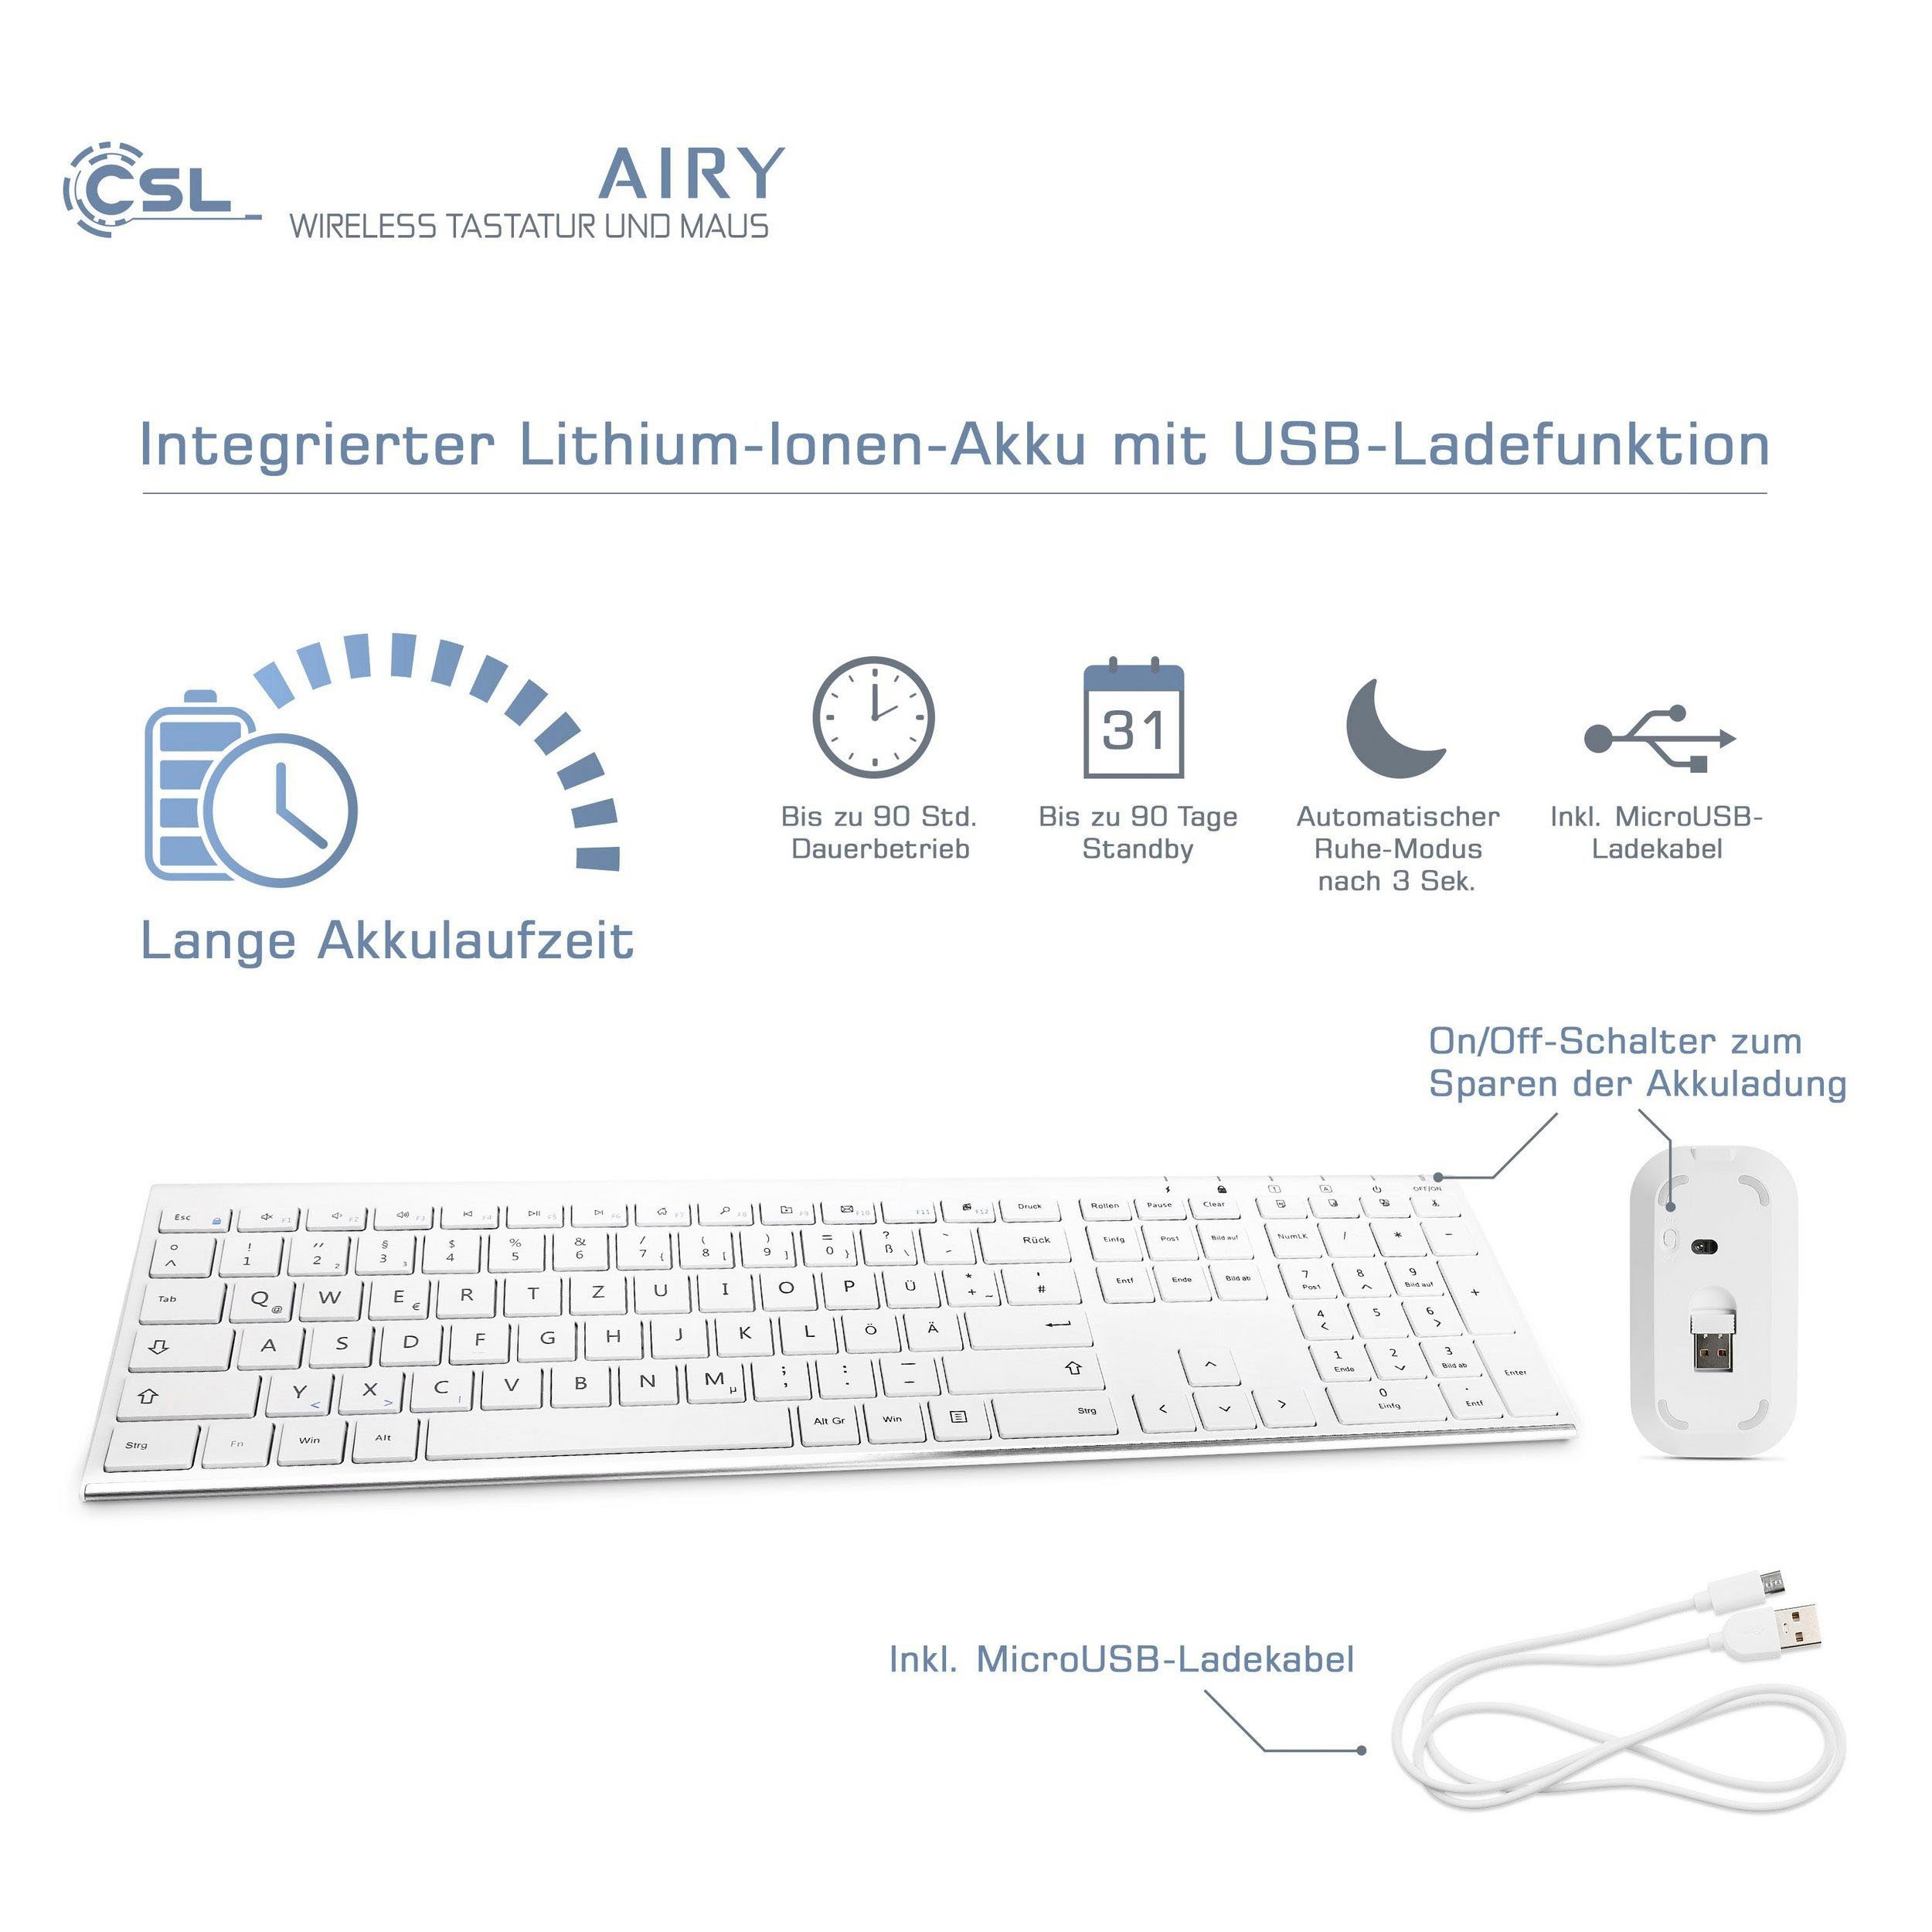 CSL AIRY Tastatur- Maus-Set und